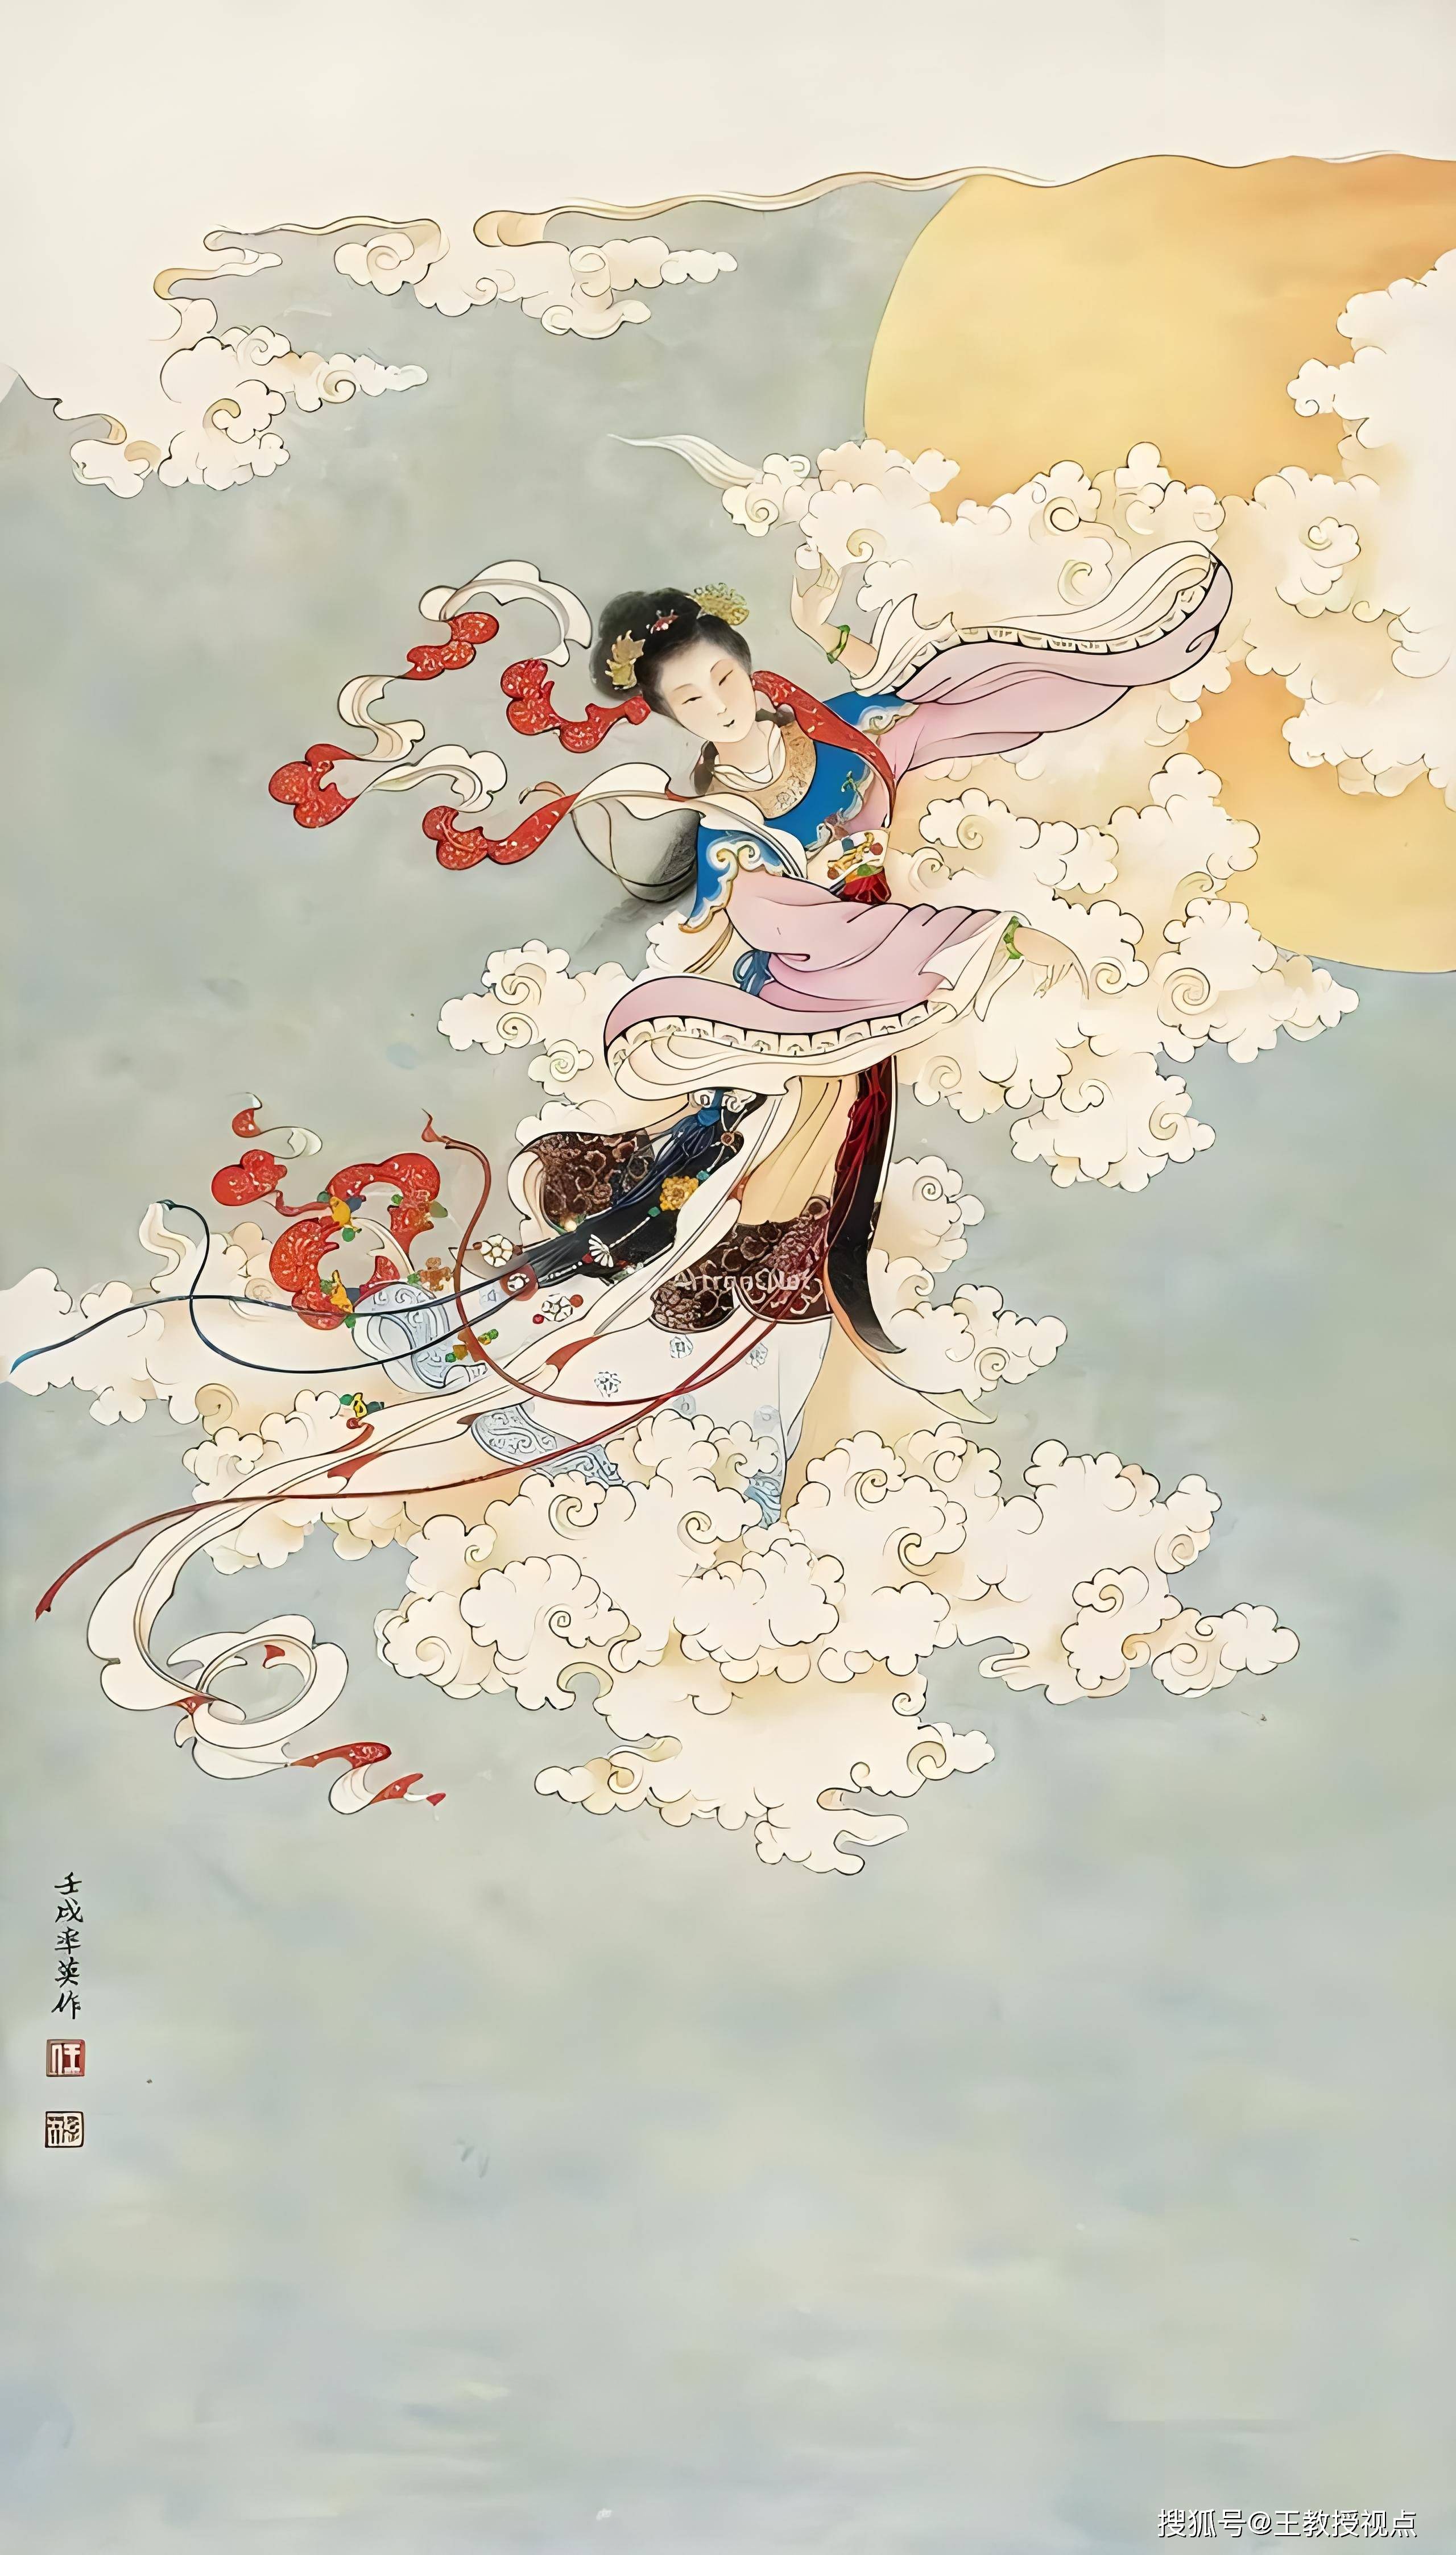 嫦娥传说与中华文化:月宫仙子的科学幻想与文化传承